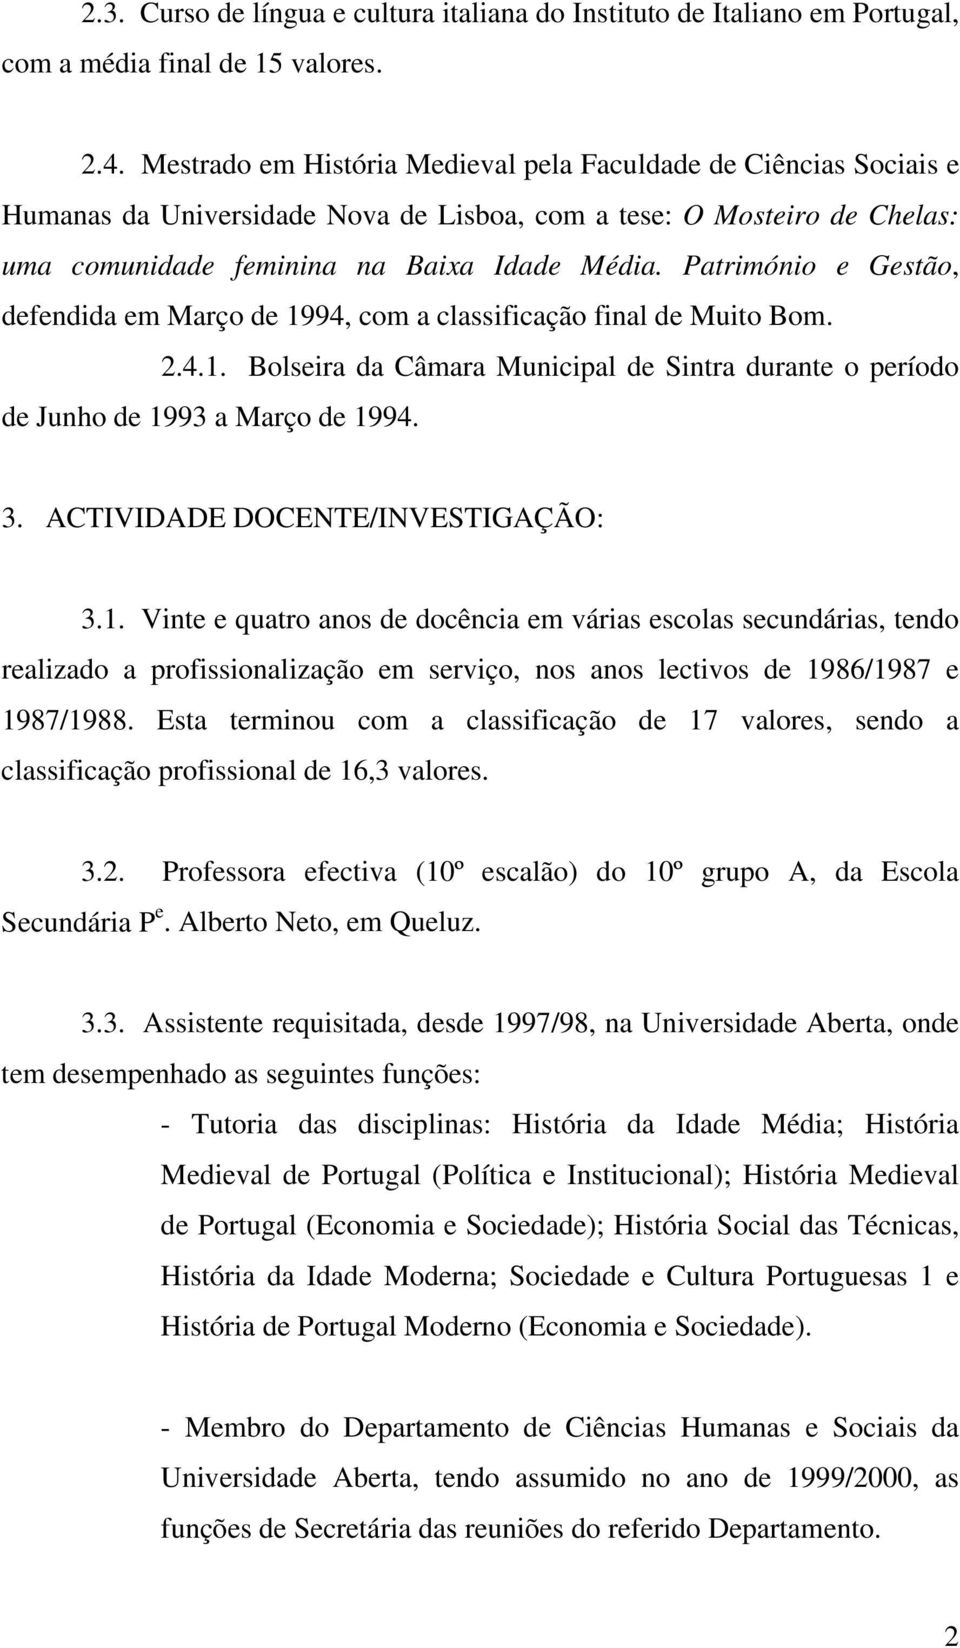 Património e Gestão, defendida em Março de 1994, com a classificação final de Muito Bom. 2.4.1. Bolseira da Câmara Municipal de Sintra durante o período de Junho de 1993 a Março de 1994. 3.